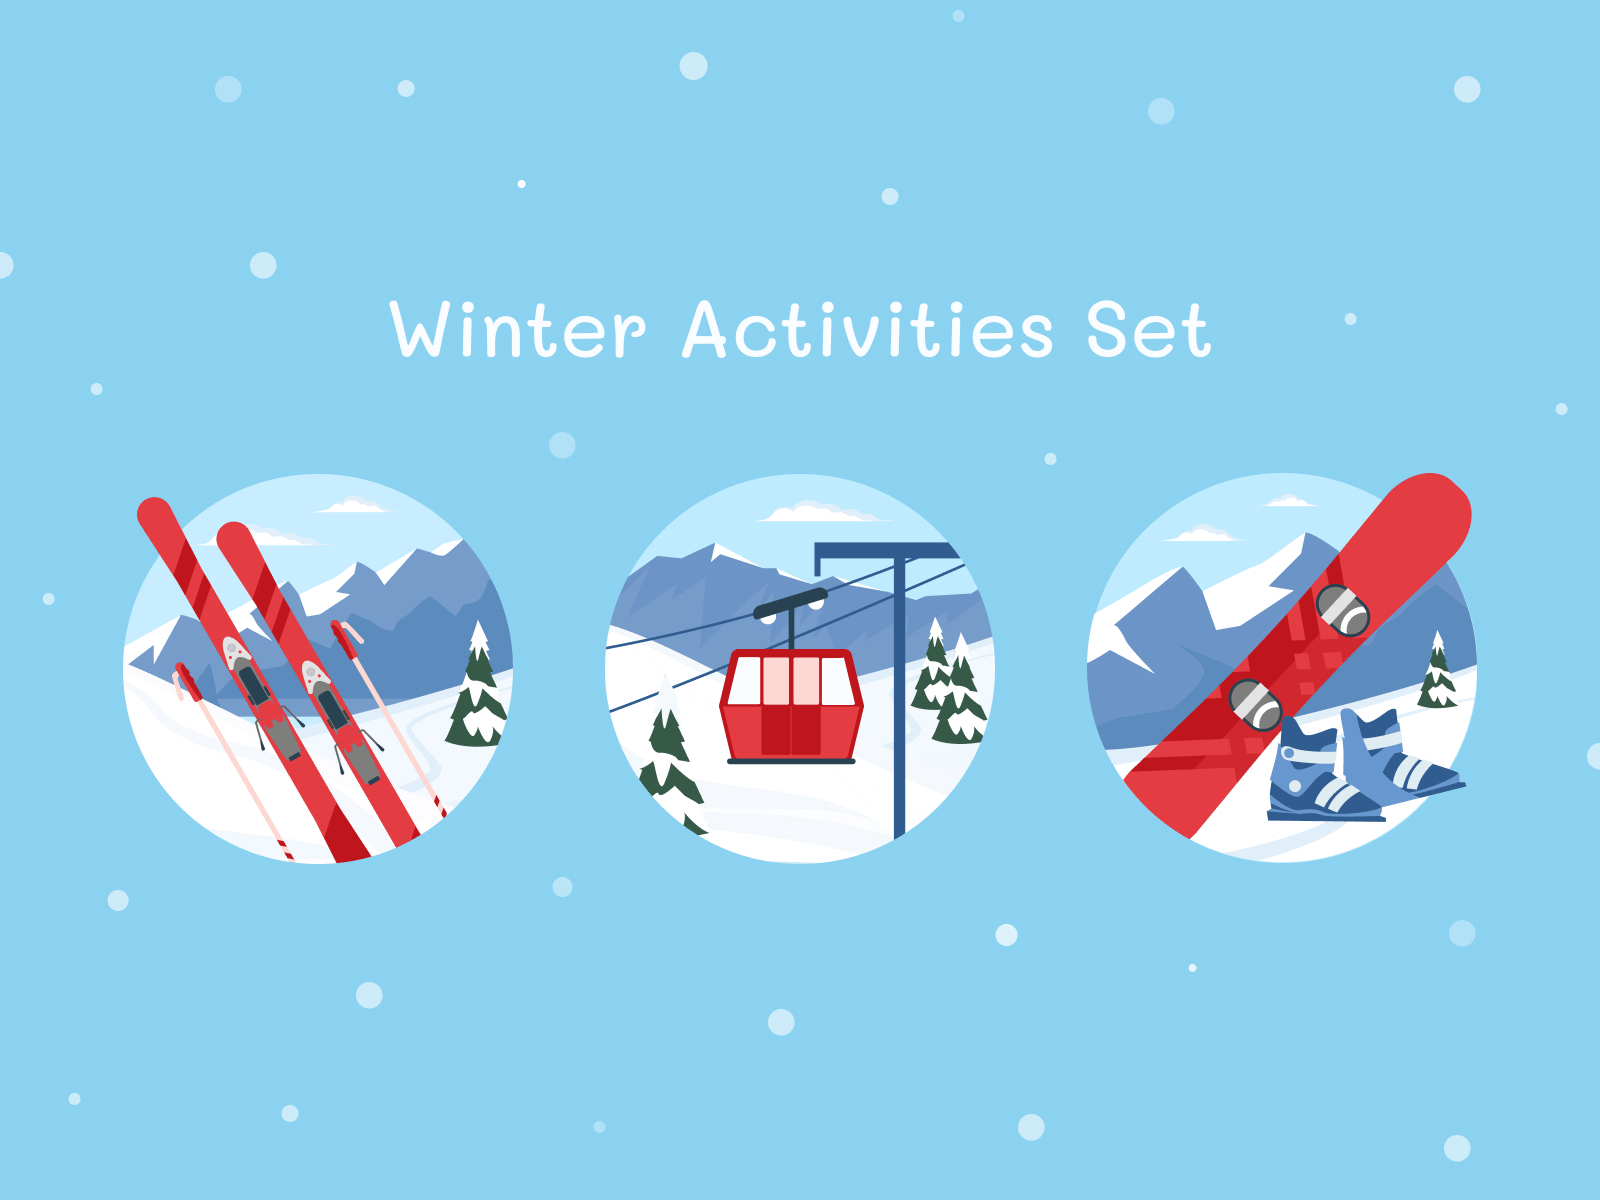 Outdoor Activity - Winter Activities Set design icon design icons icons set illustration outdoor outdooractivity professional upqode winter sports